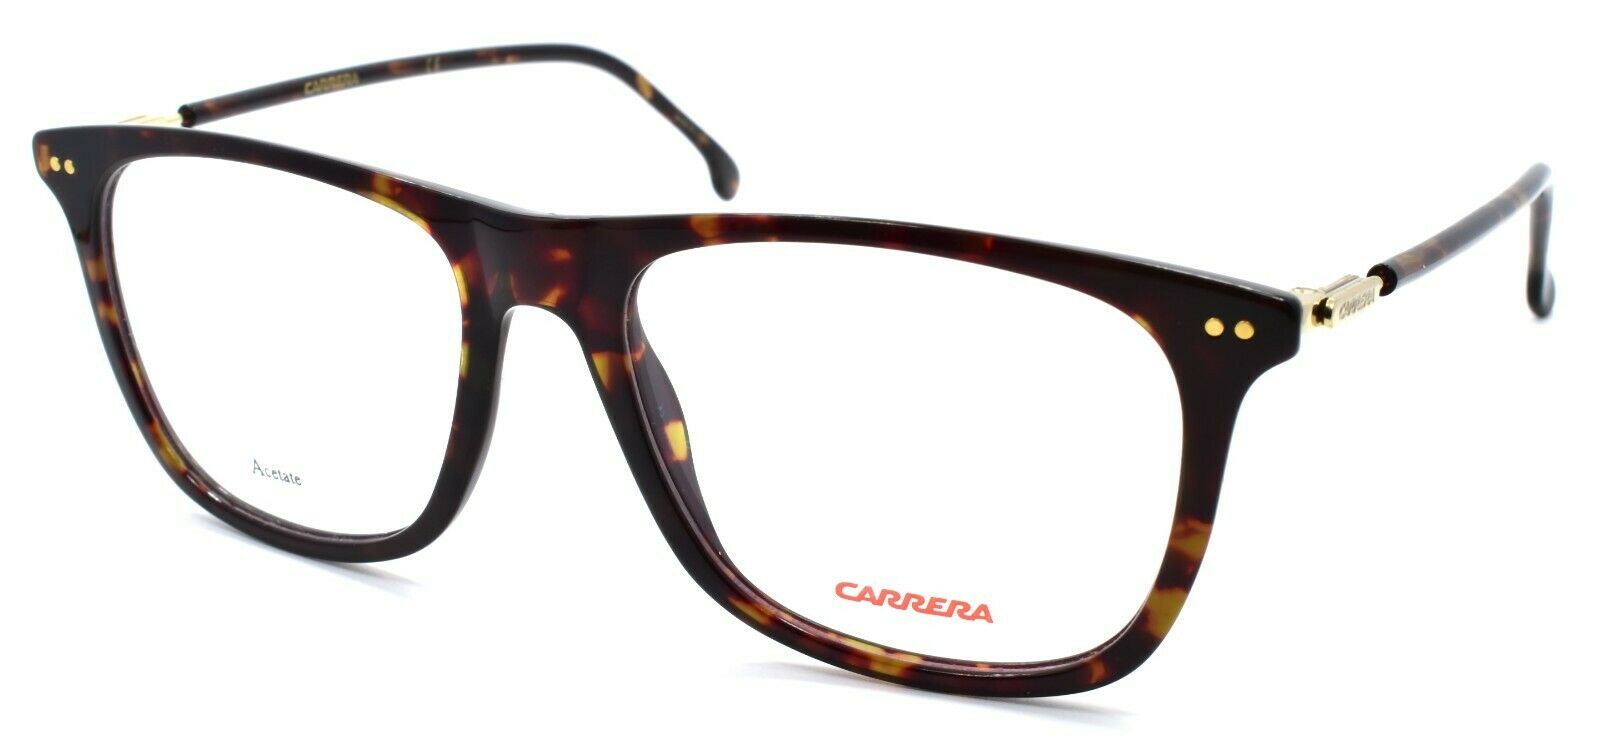 1-Carrera 144/V 086 Men's Eyeglasses Frames 52-17-145 Dark Havana-762753114730-IKSpecs